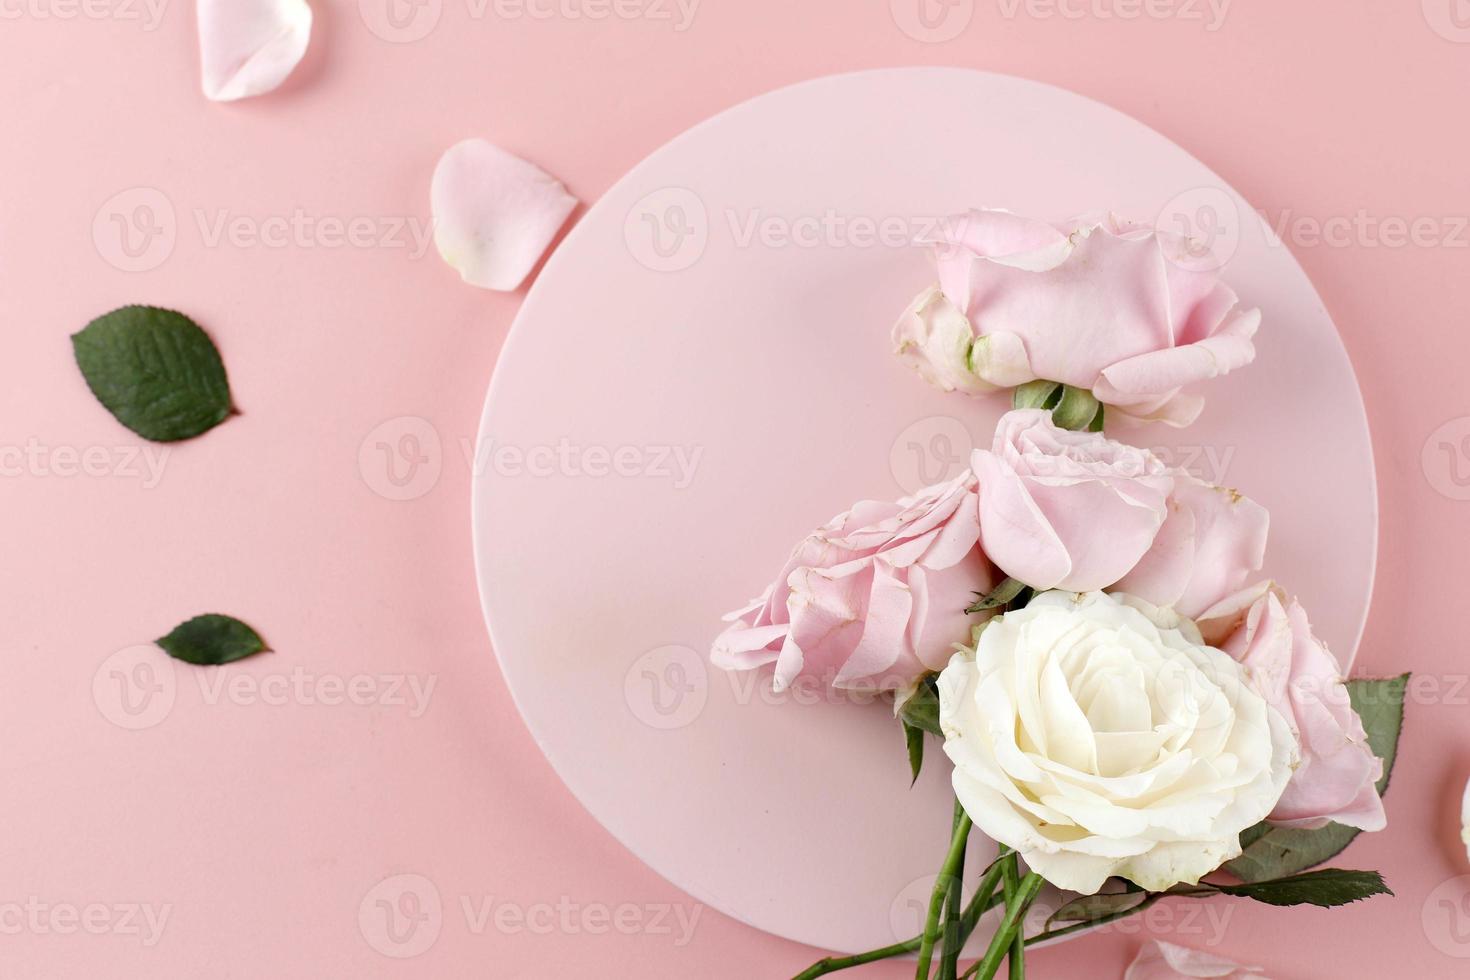 bloemenroos achtergrond gemaakt frpm roze en witte roos, plat lag, bovenaanzicht. foto